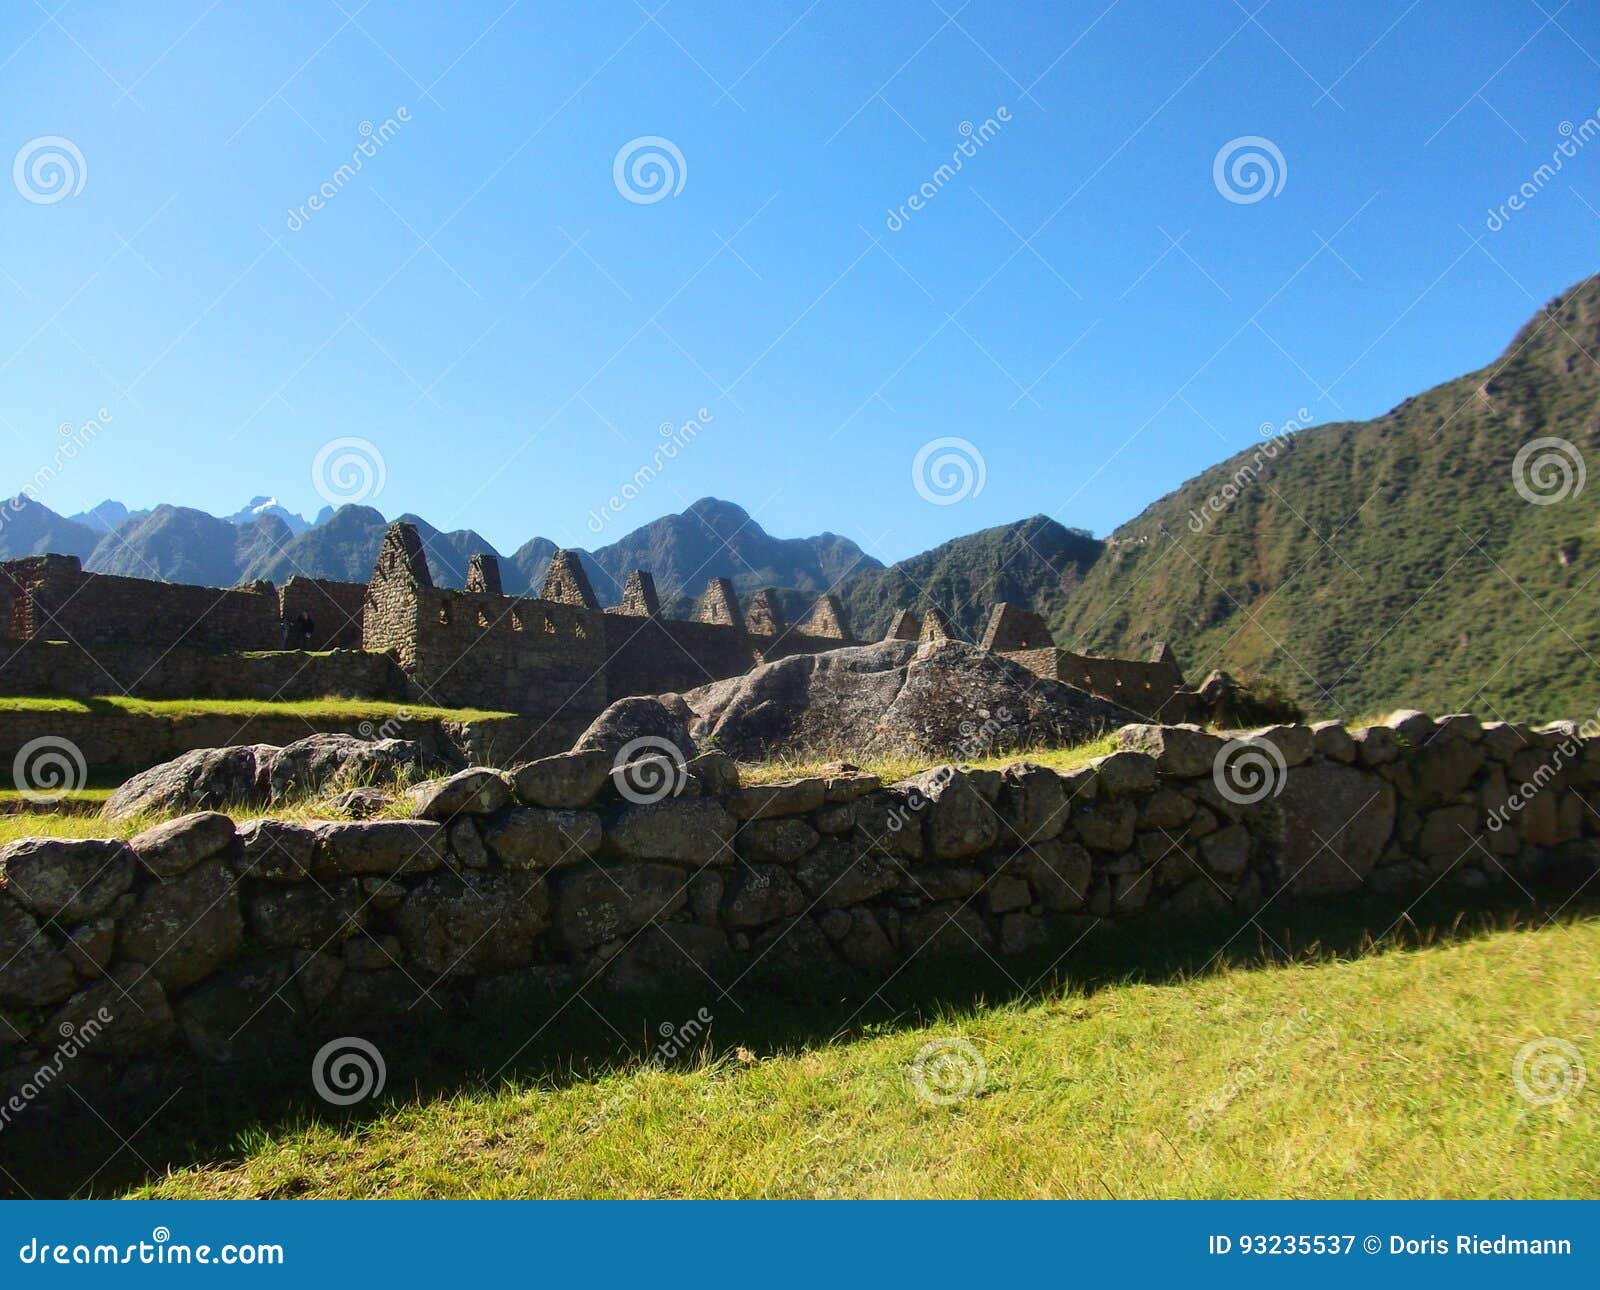 machu picchu peru inca ruins world wonder southamerica